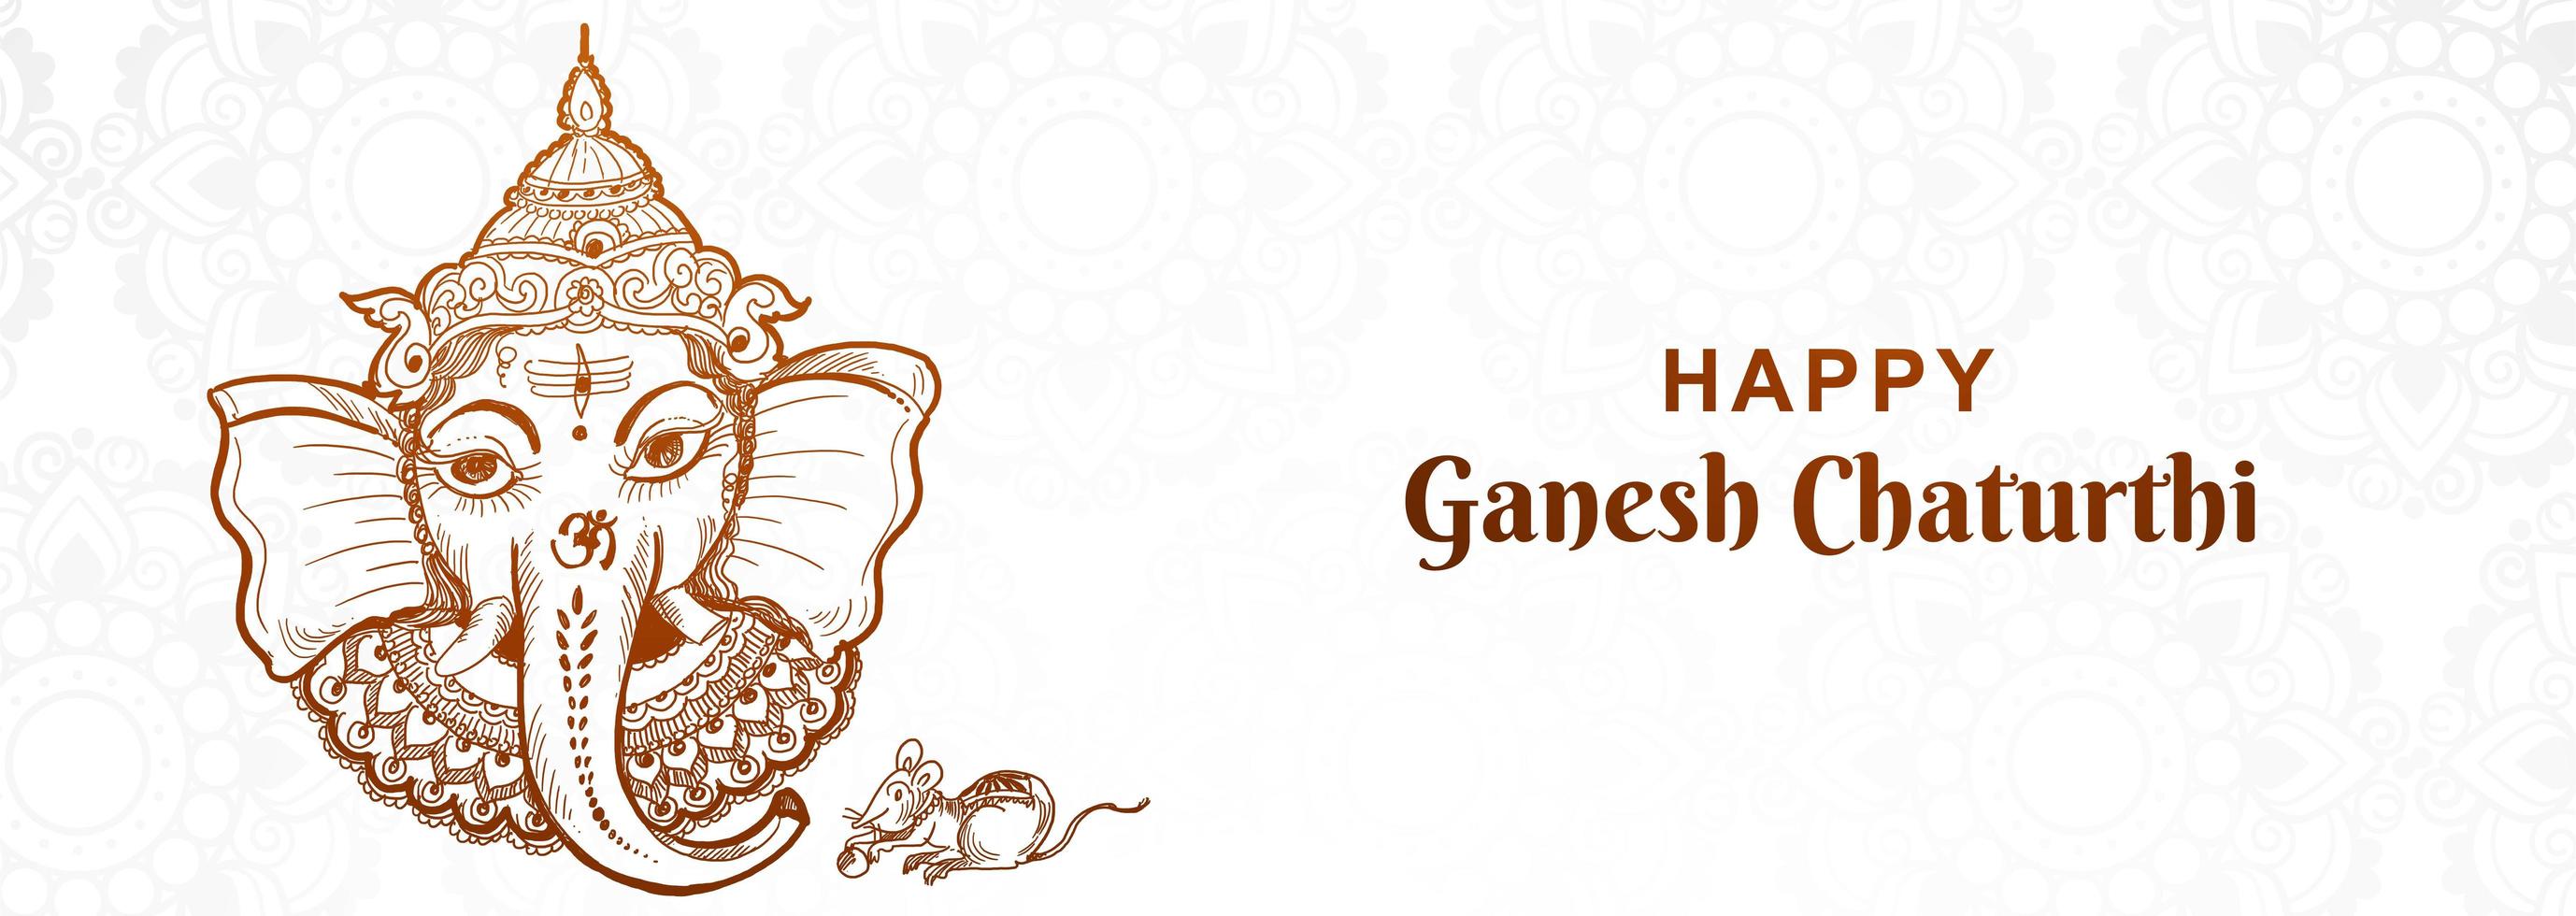 künstlerisches Ganesh Chaturthi Festival Banner vektor